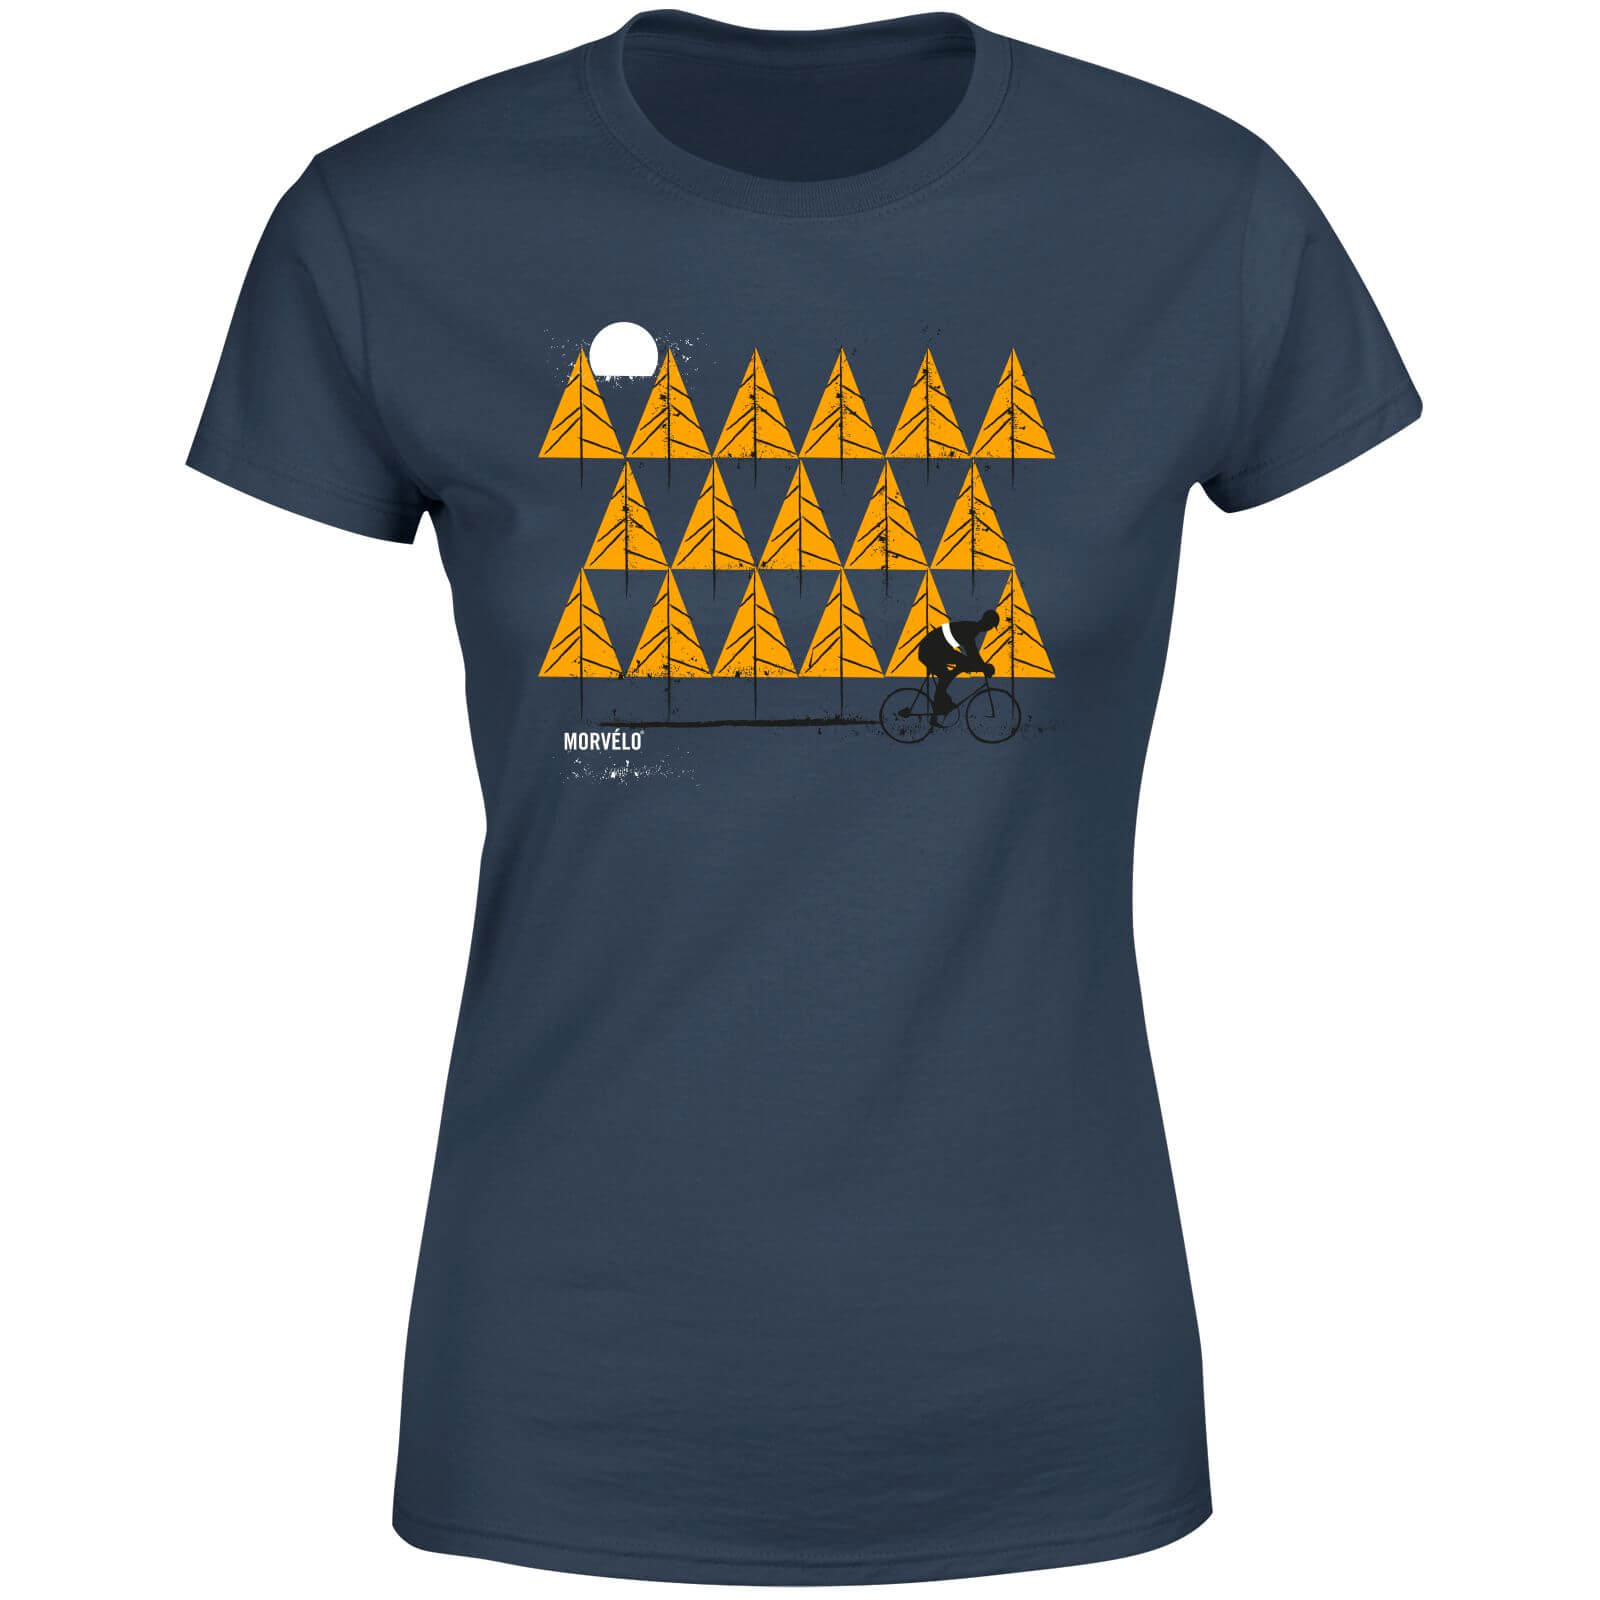 Morvelo Homeward Women's T-Shirt - Navy - S - Navy